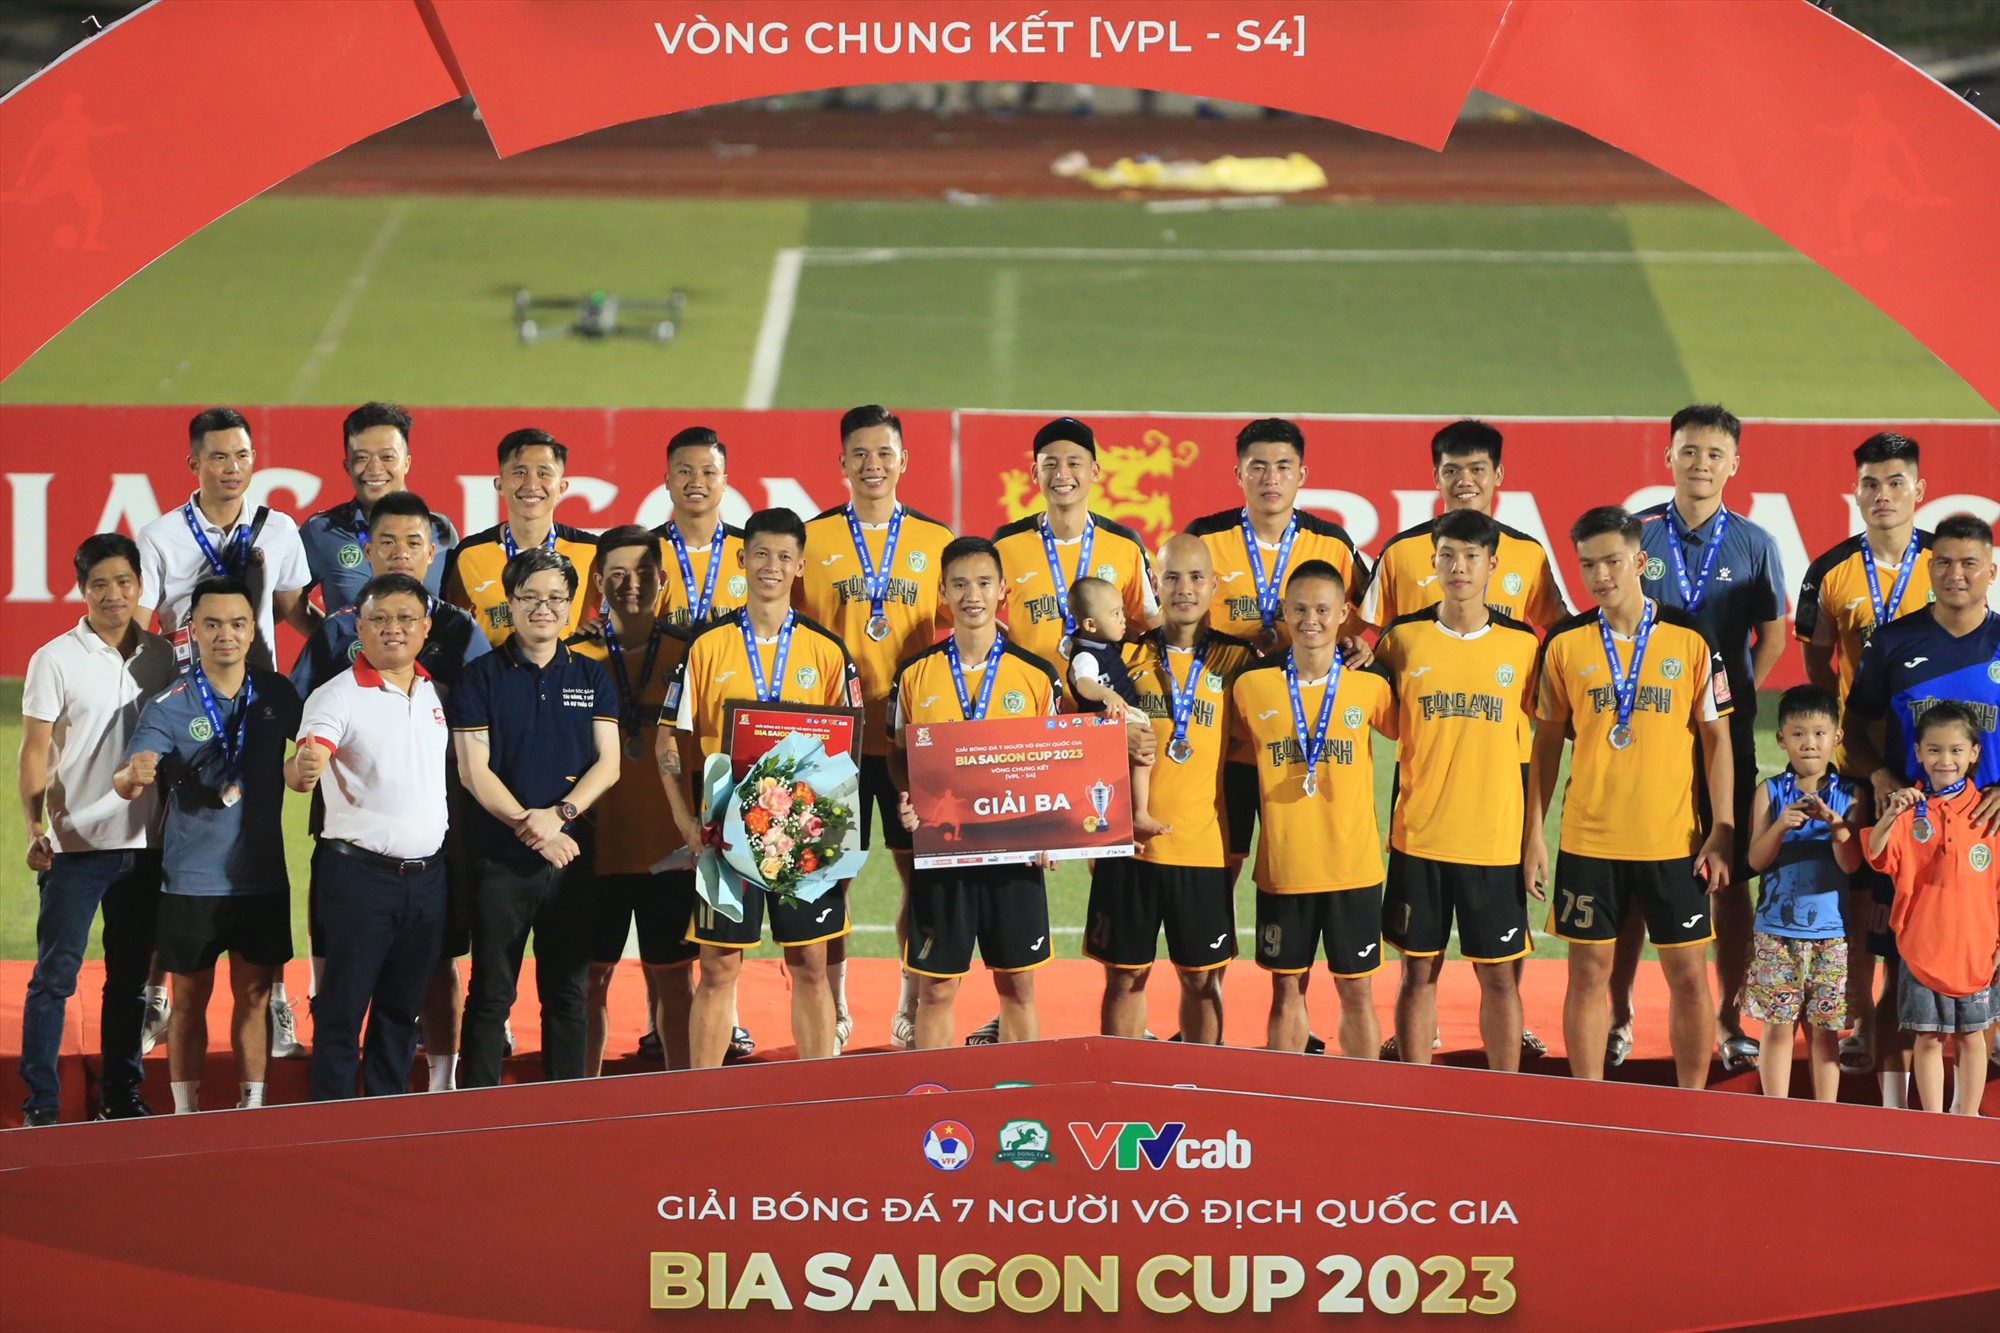 Trong trận tranh hạng Ba, Tùng Anh vượt qua Mobi với tỉ số 2-1 để giành Huy chương Đồng. Trong khi đó ở 2 trận phân hạng, An Biên giành hạng 5 sau chiến thắng trước Đạt Tín - SPT và Be Tong 26 Gia Lai đánh bại Bảy Núi 4-2 để giành hạng 7.